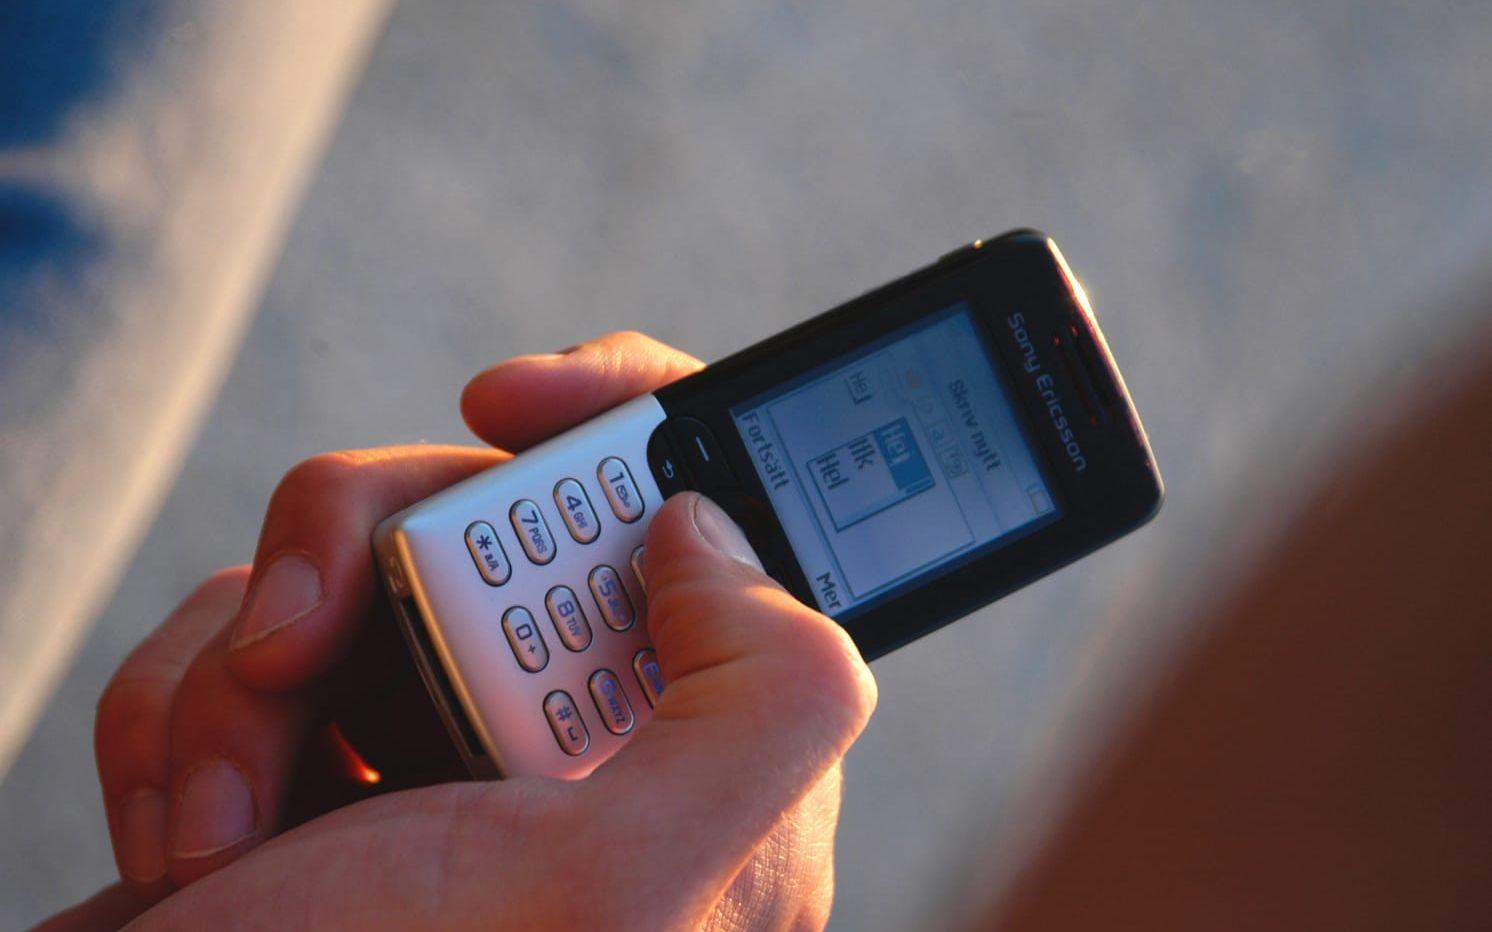 Enkla mobiltelefoner och digitalvågar kan vara ett tecken på att en person säljer narkotika. Foto: Hasse Holmberg.